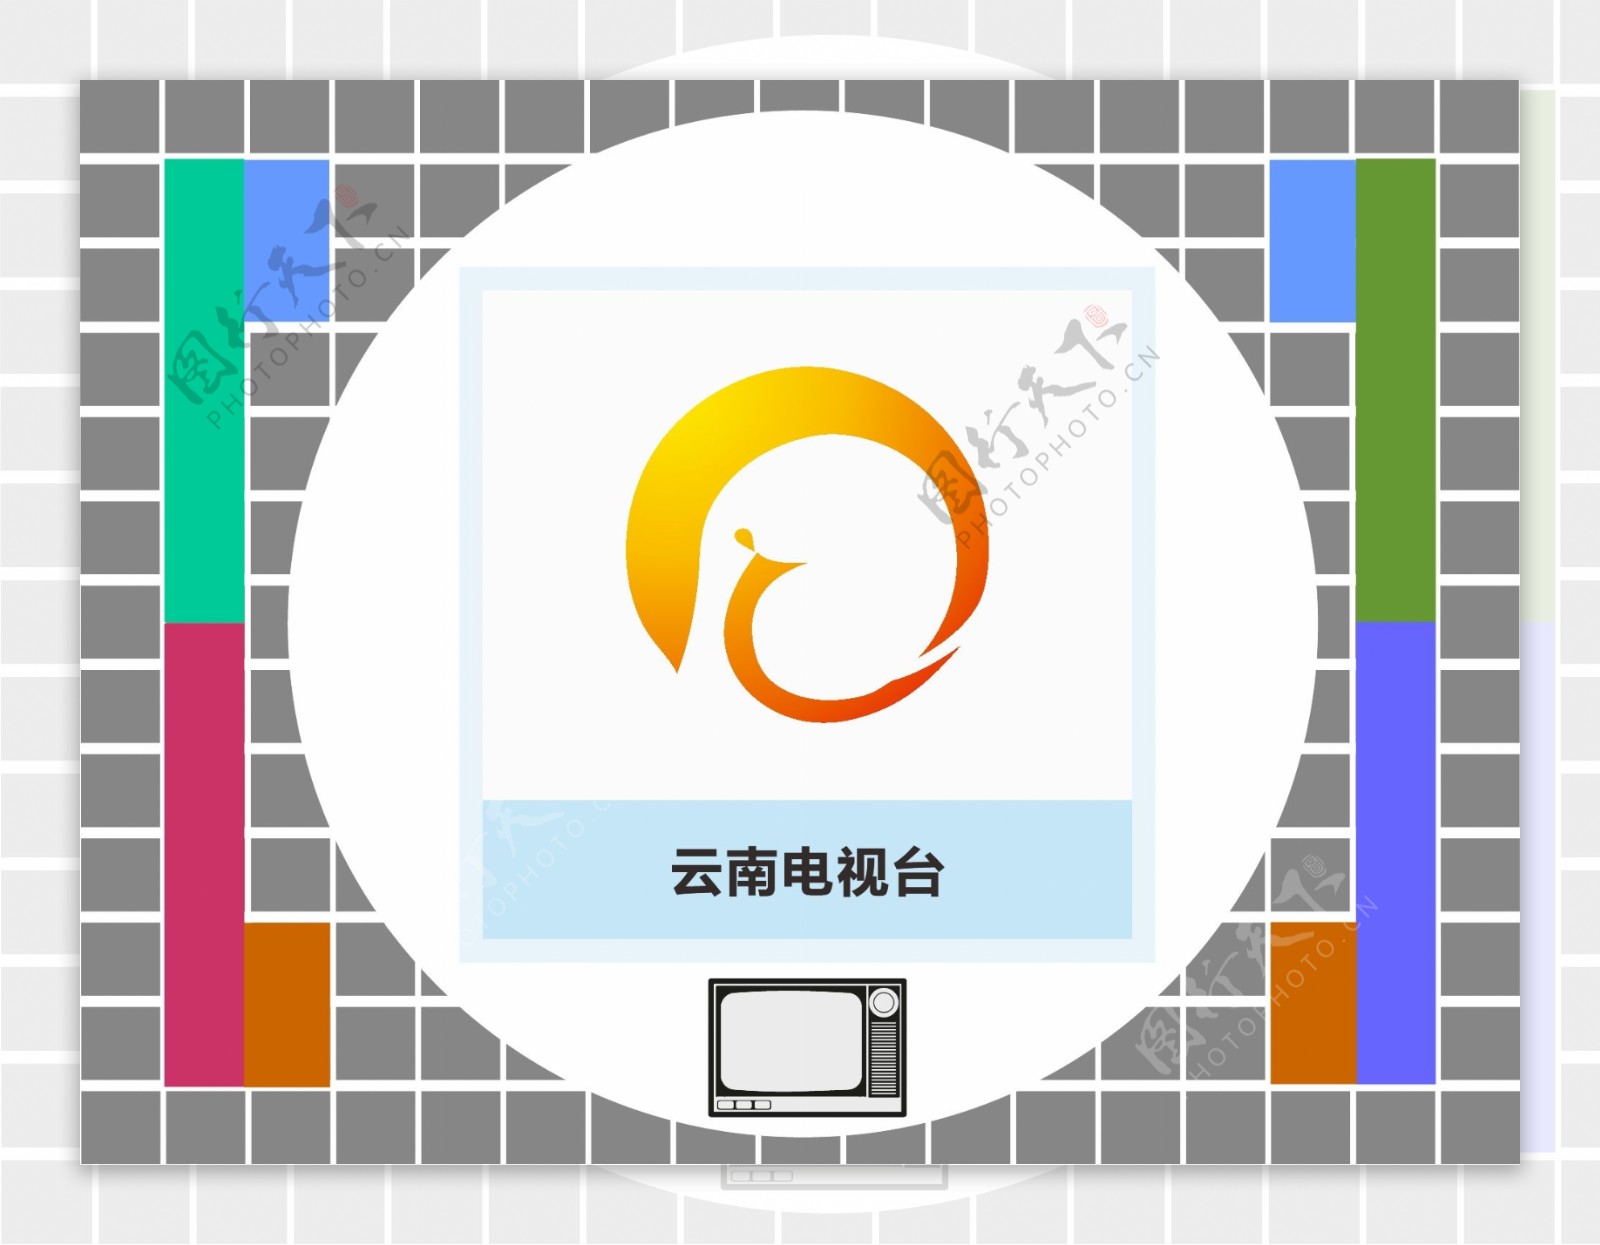 云南卫视台标志logo图片-诗宸标志设计